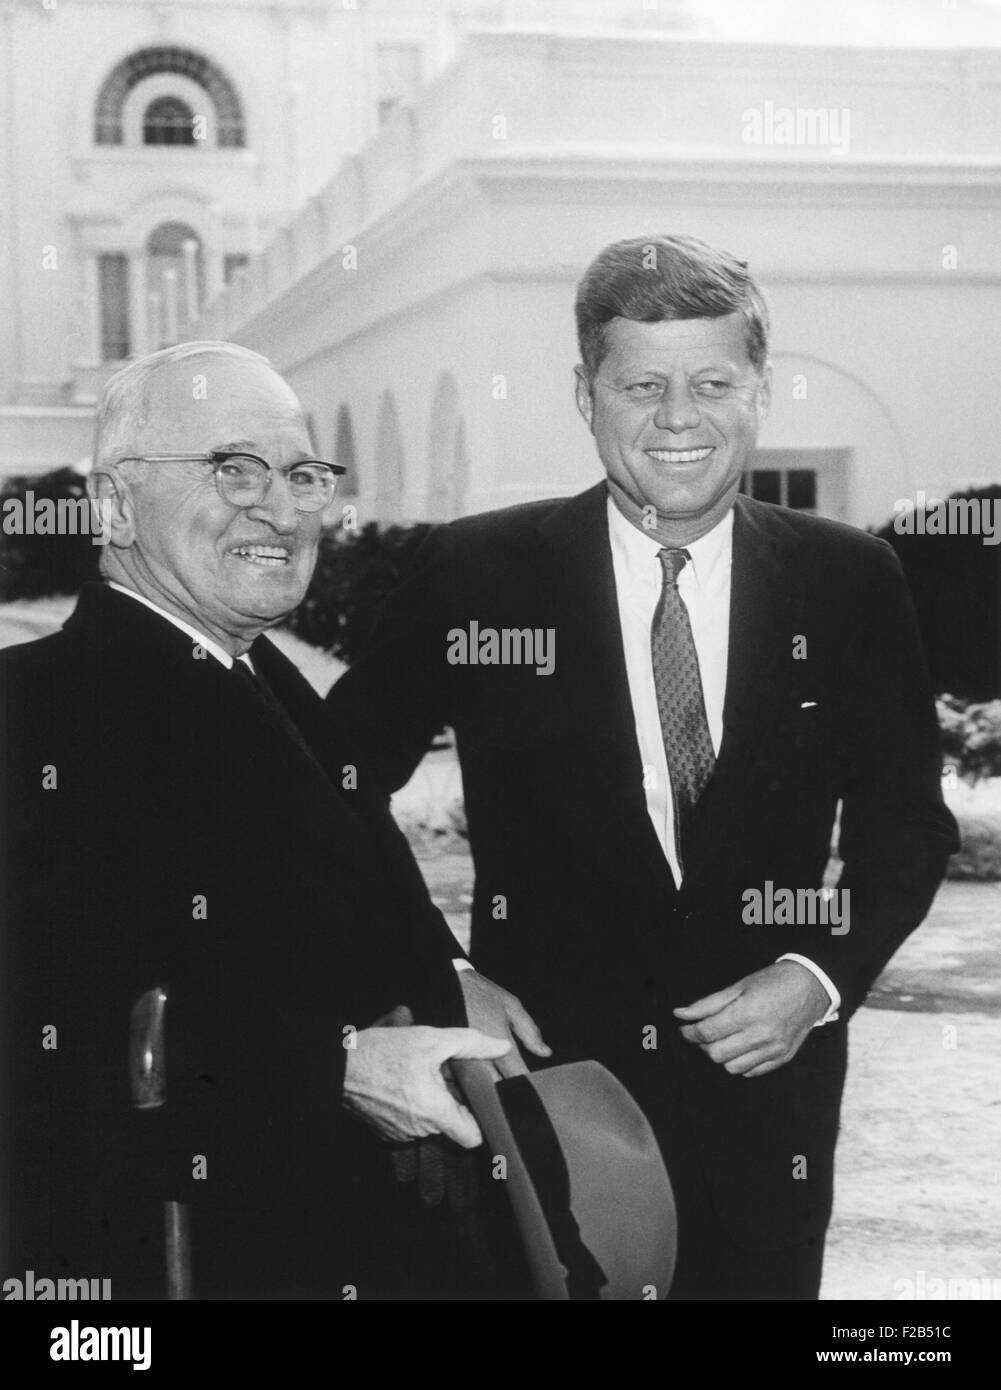 Präsident John Kennedy und ehemaliger Präsident Harry Truman vor dem weißen Haus. Am Tag nach seiner Amtseinführung traf sich JFK mit Truman. 21. Januar 1961. -(BSLOC 2015 1 153) Stockfoto